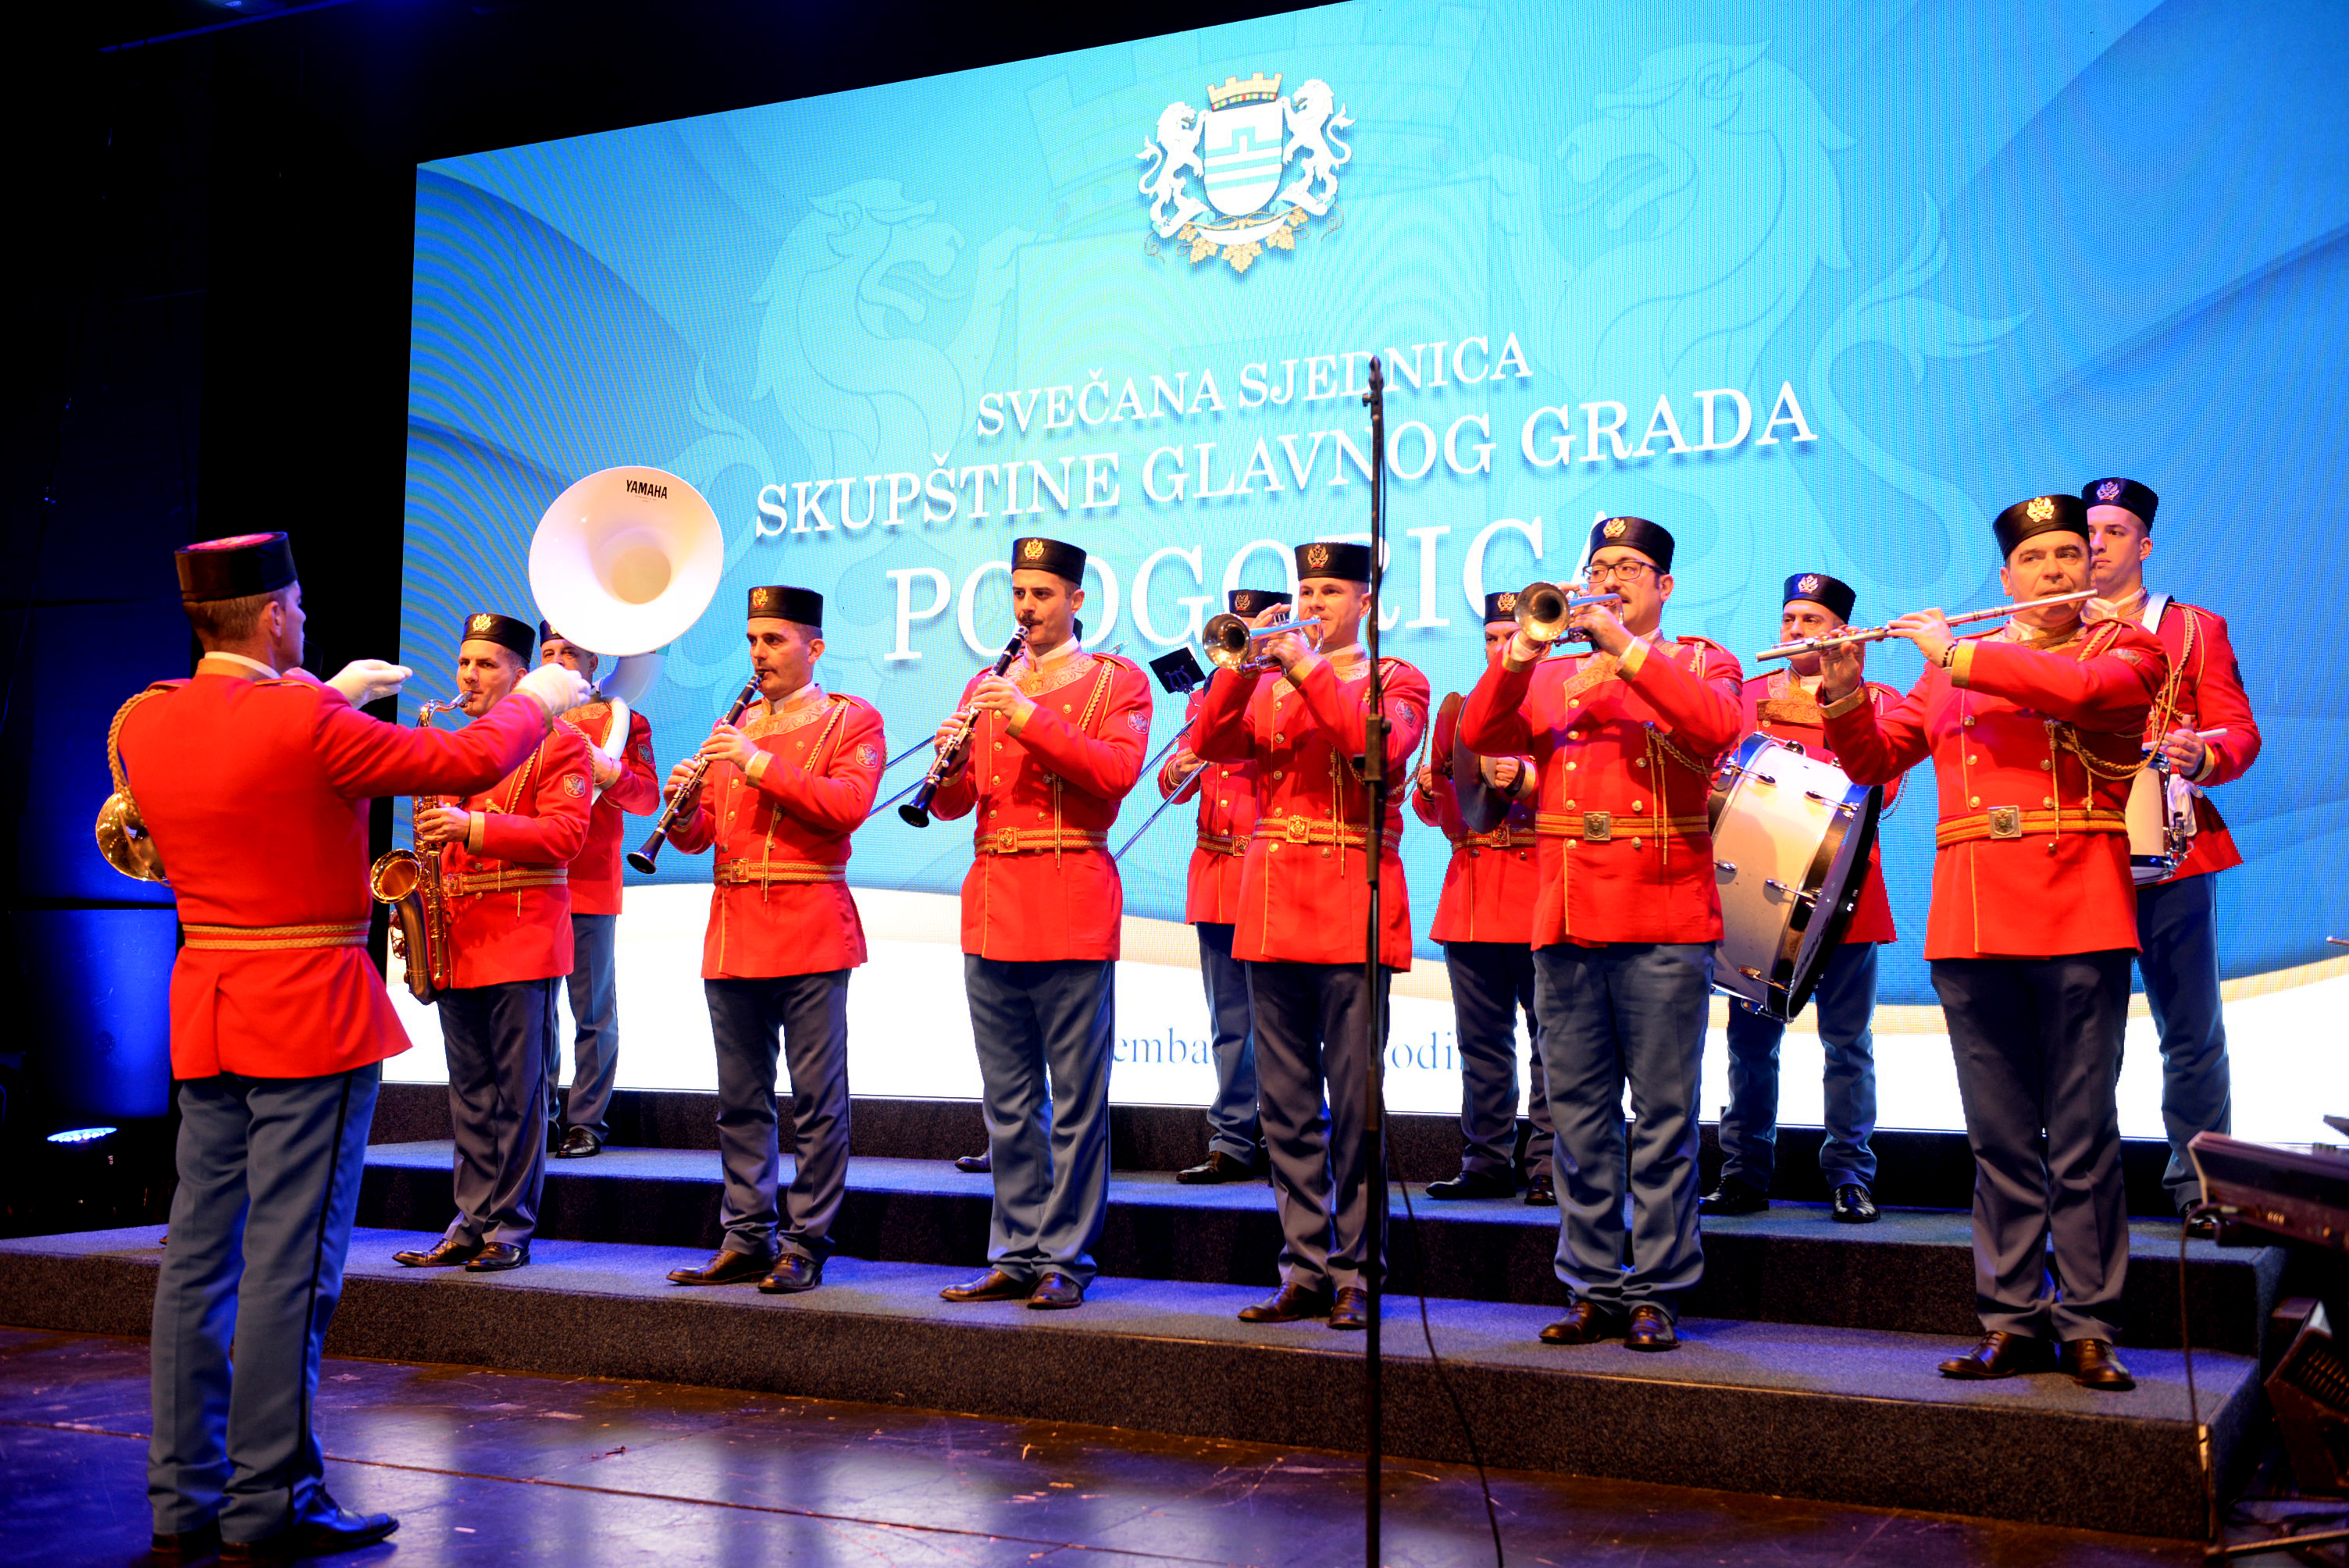 Svečana sjednica Skupštine Glavnog grada; Podgorica slavi praznik slobode spremna za novi razvojni zamajac